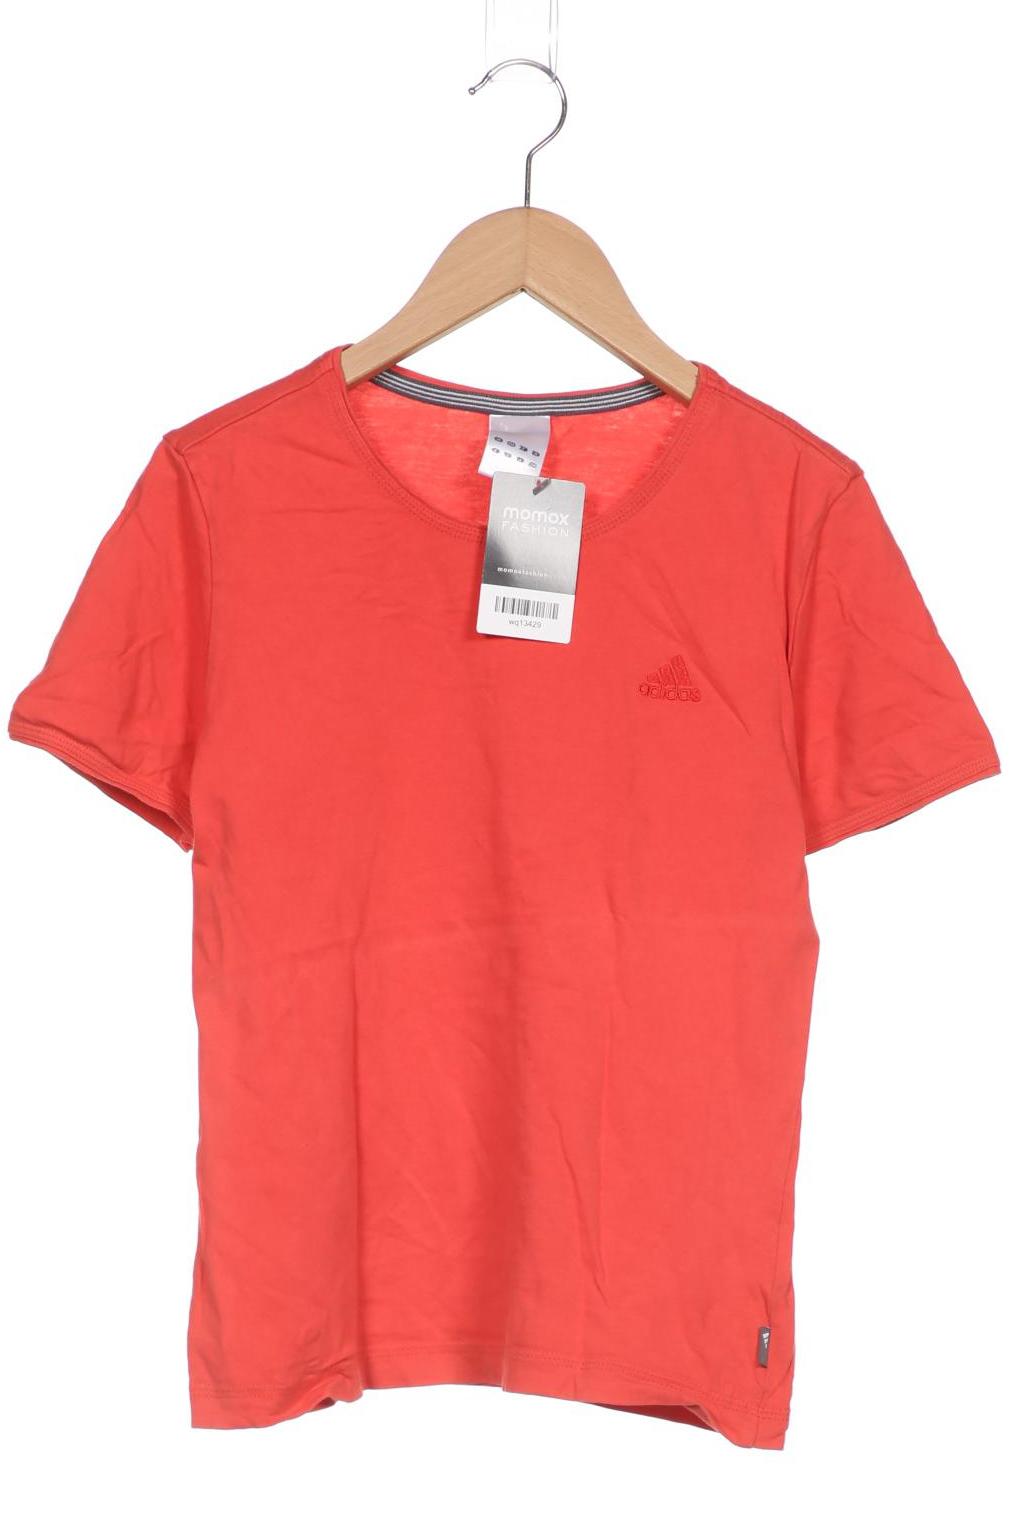 adidas Damen T-Shirt, rot von Adidas